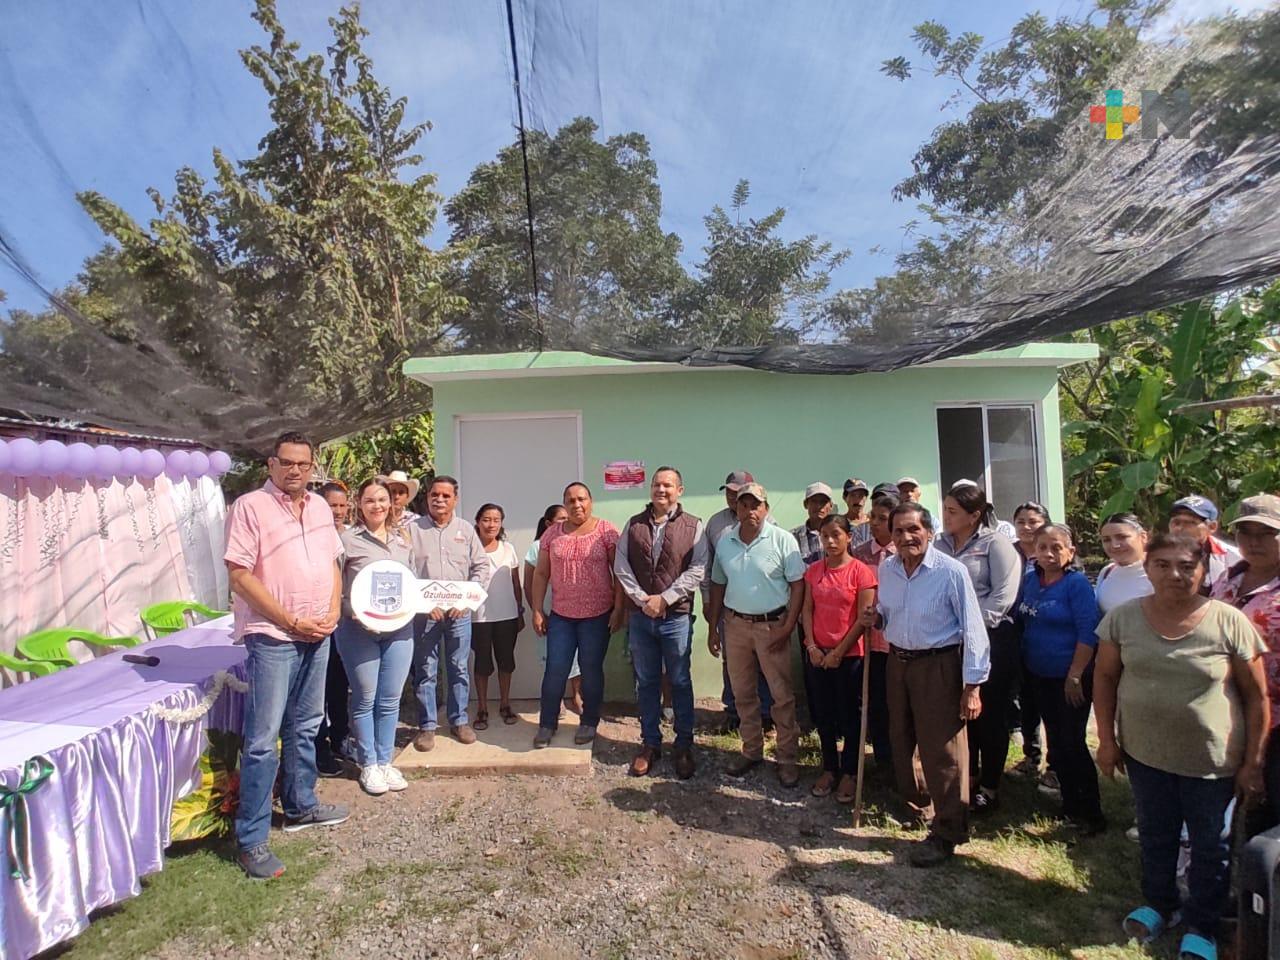 Invedem brinda apoyos a comunidad en Ozuluama de Mascareñas